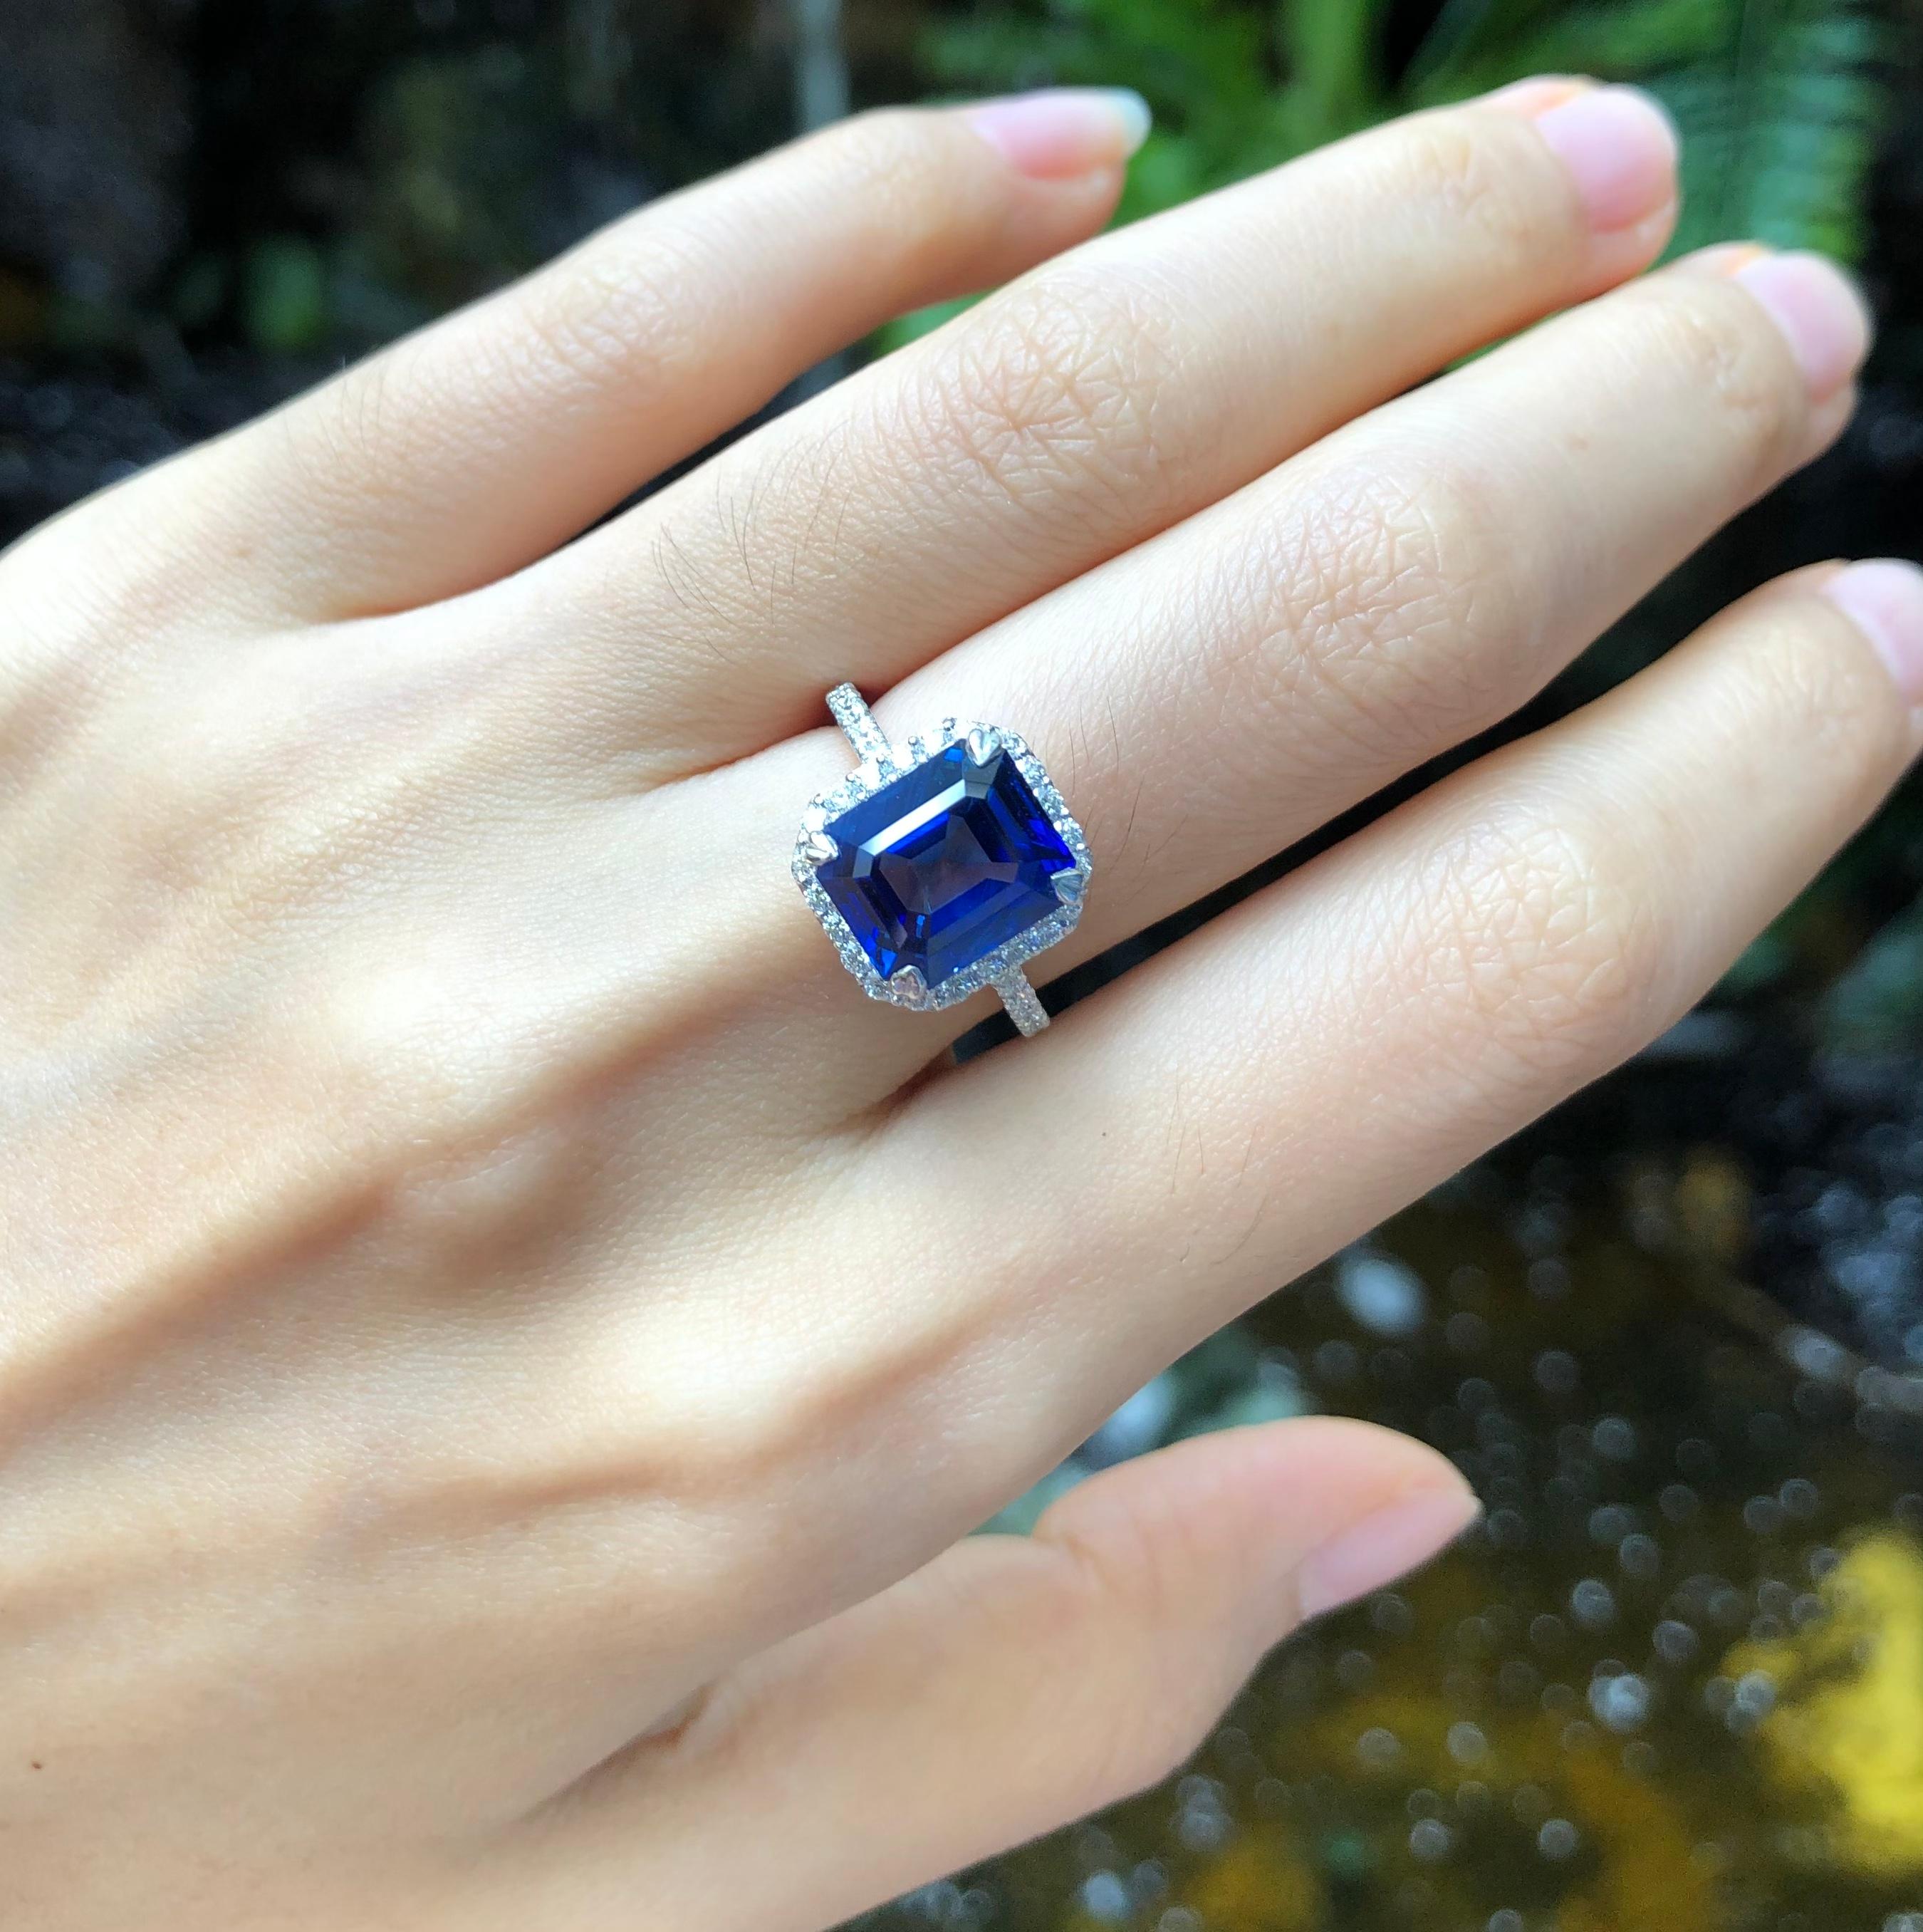 Ceylon Blauer Saphir 5,38 Karat mit Diamant 0,57 Karat Ring in Platin 950 Fassung
(GRS-zertifiziert)

Breite:  1,0 cm 
Länge:  1,2 cm
Ringgröße: 50
Gesamtgewicht: 7,3 Gramm

Ceylon Blauer Saphir
Breite:  0,9 cm 
Länge:  1.0 cm

